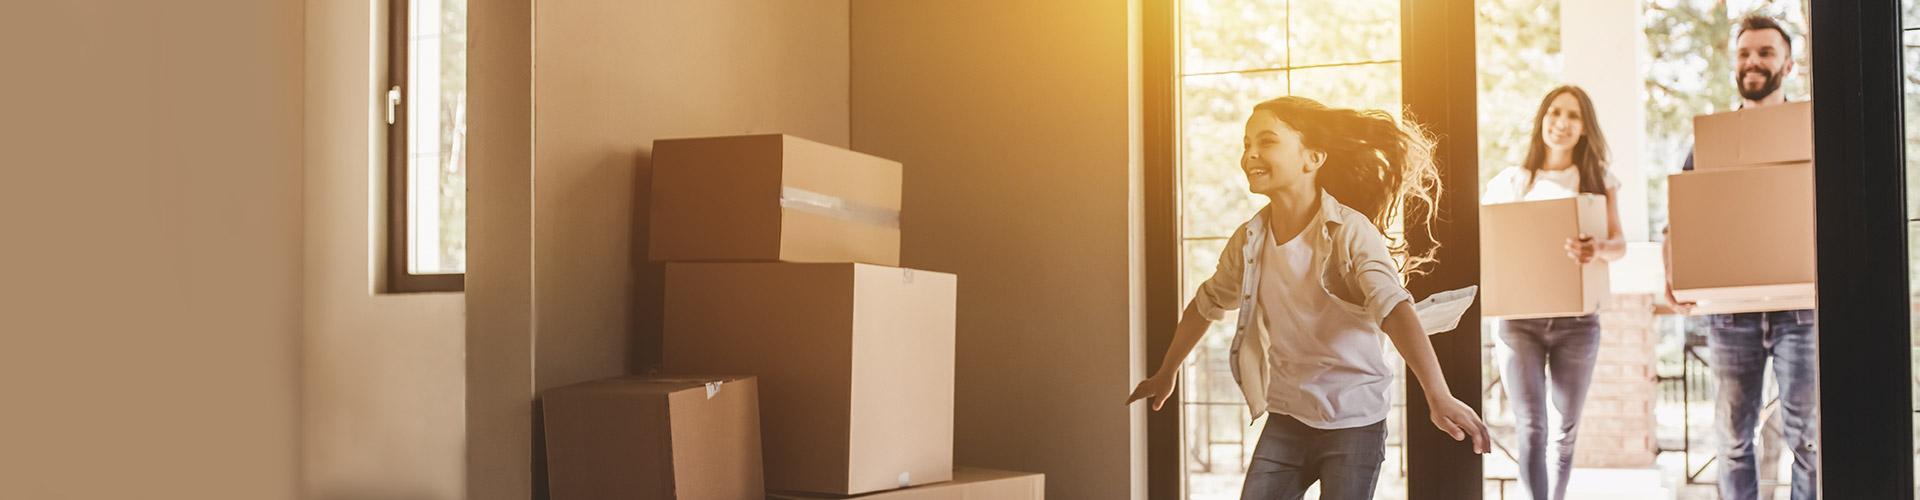 Hipotecas - Pareja con su hija mudándose a su nueva casa felices rodeado de cajas